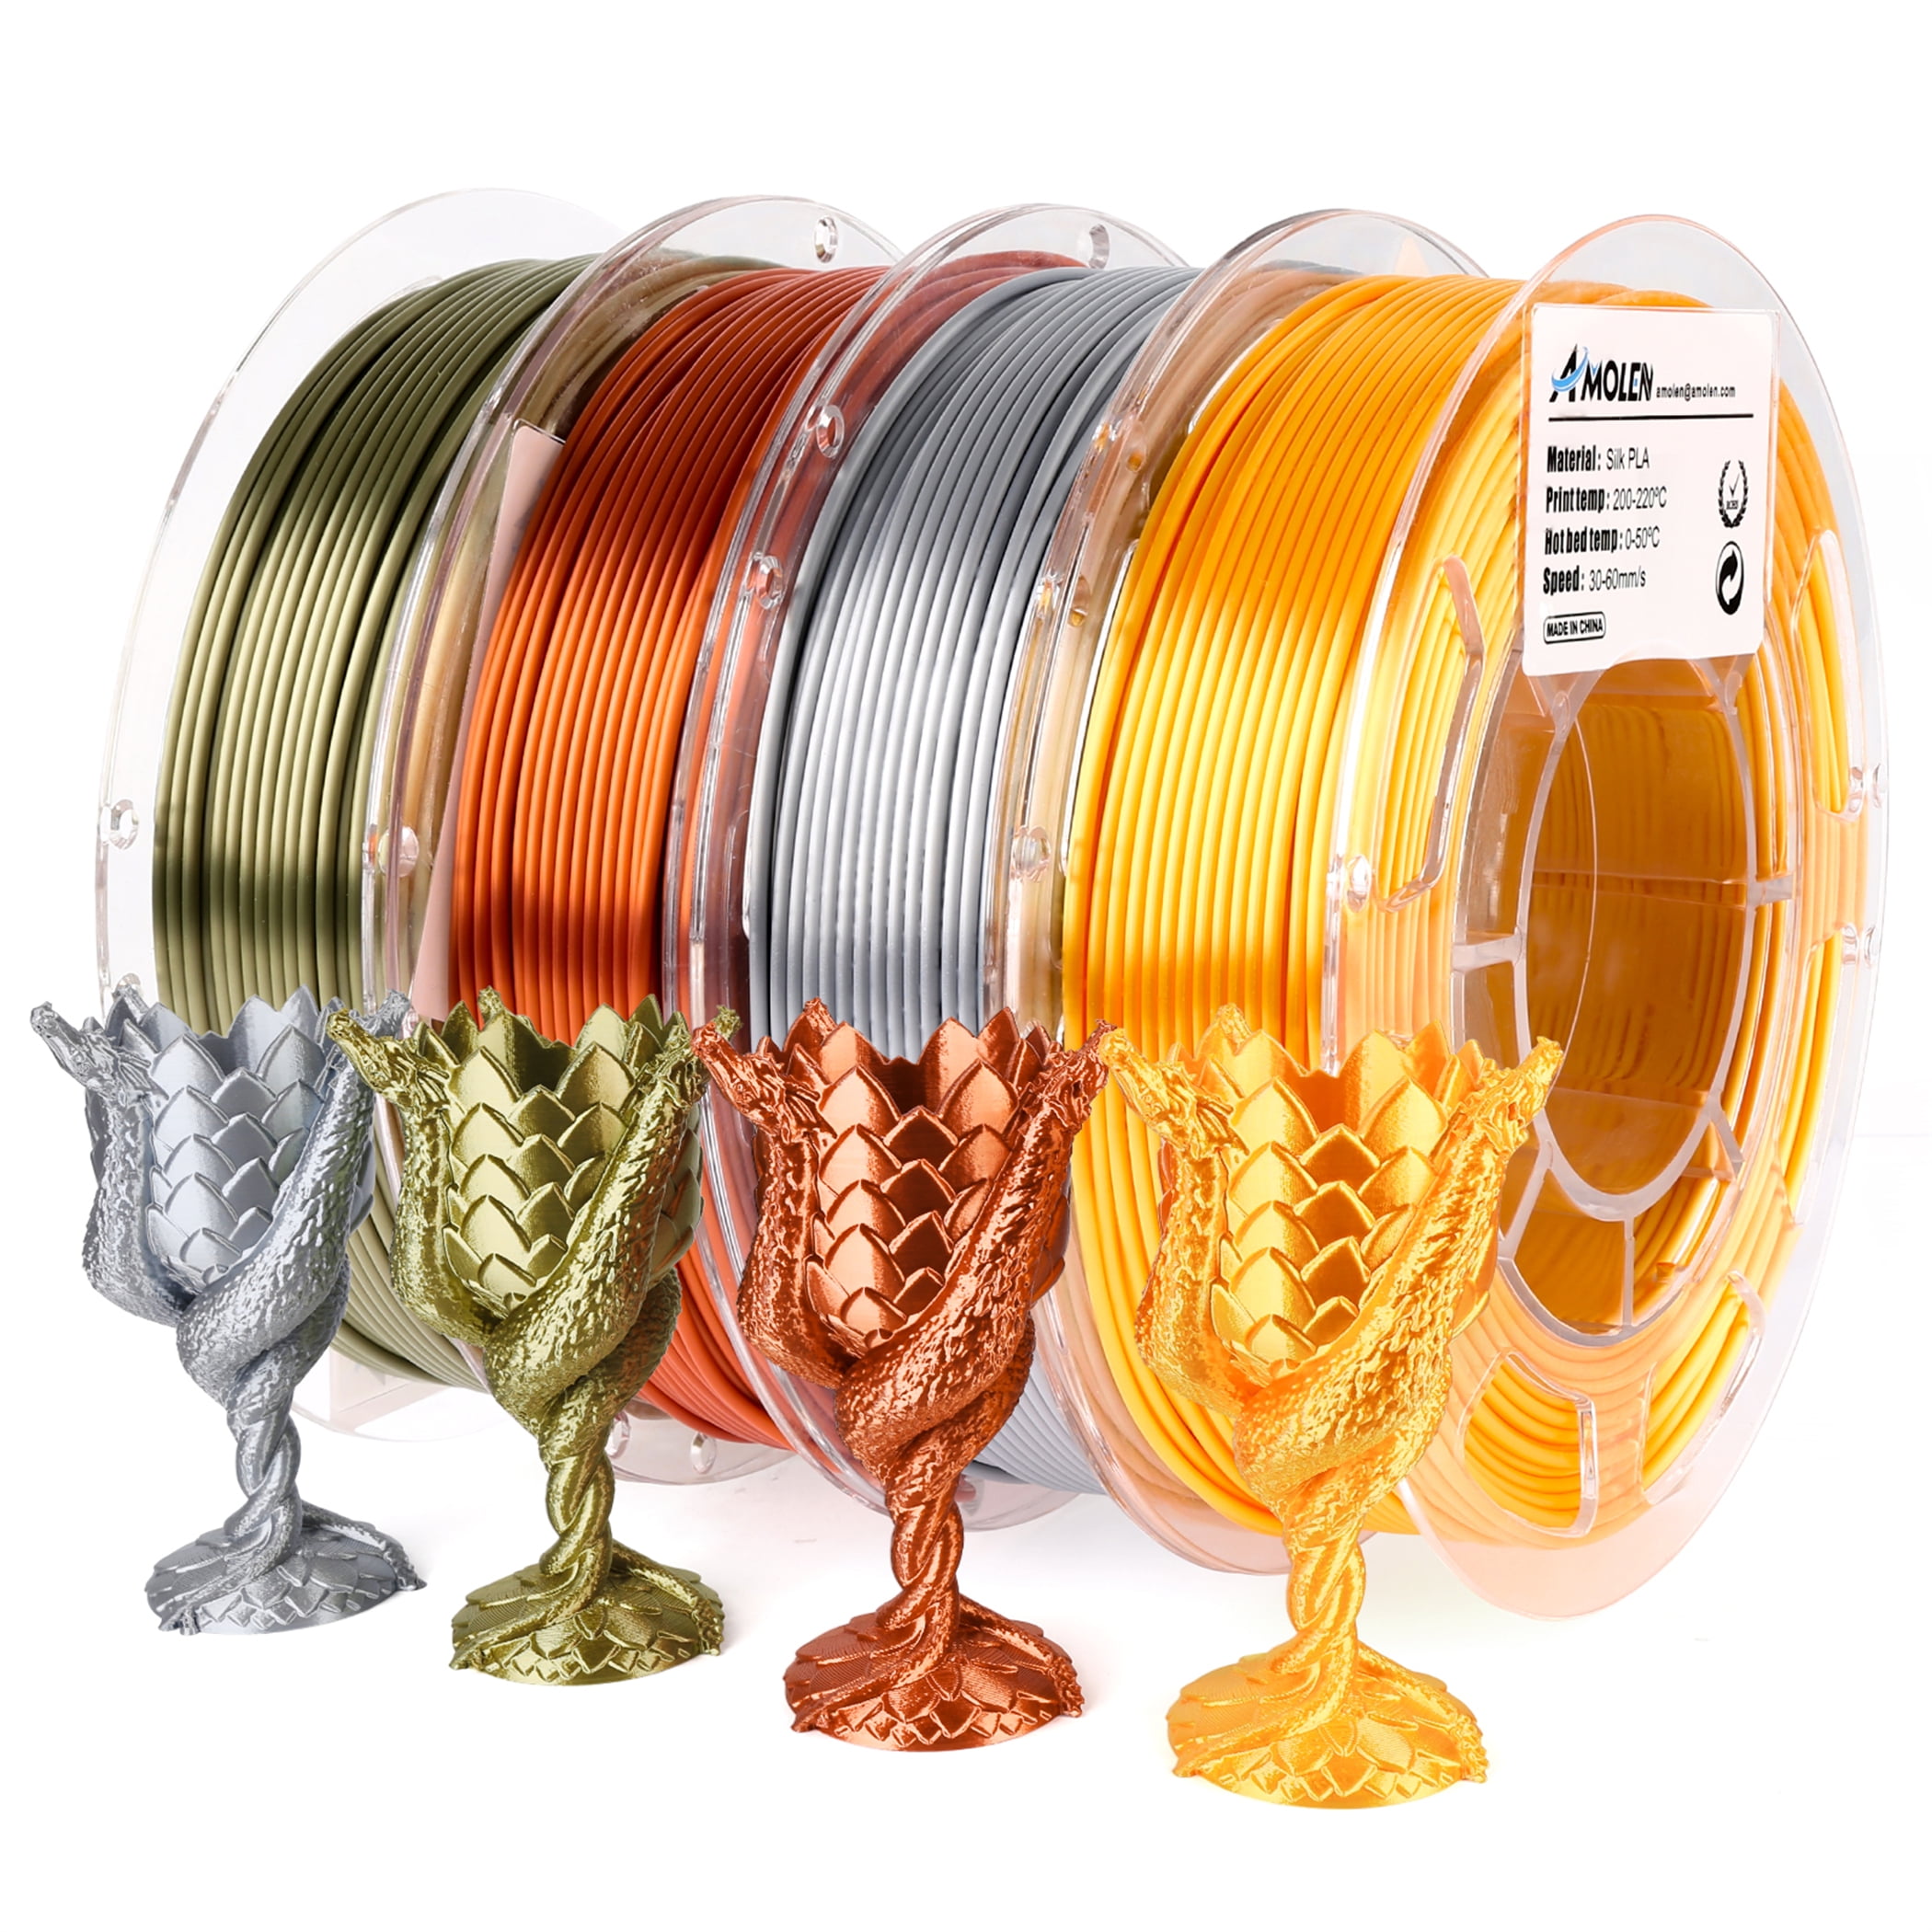 Transparent PETG Filament Bundle 200g*4 Spools – AMOLEN